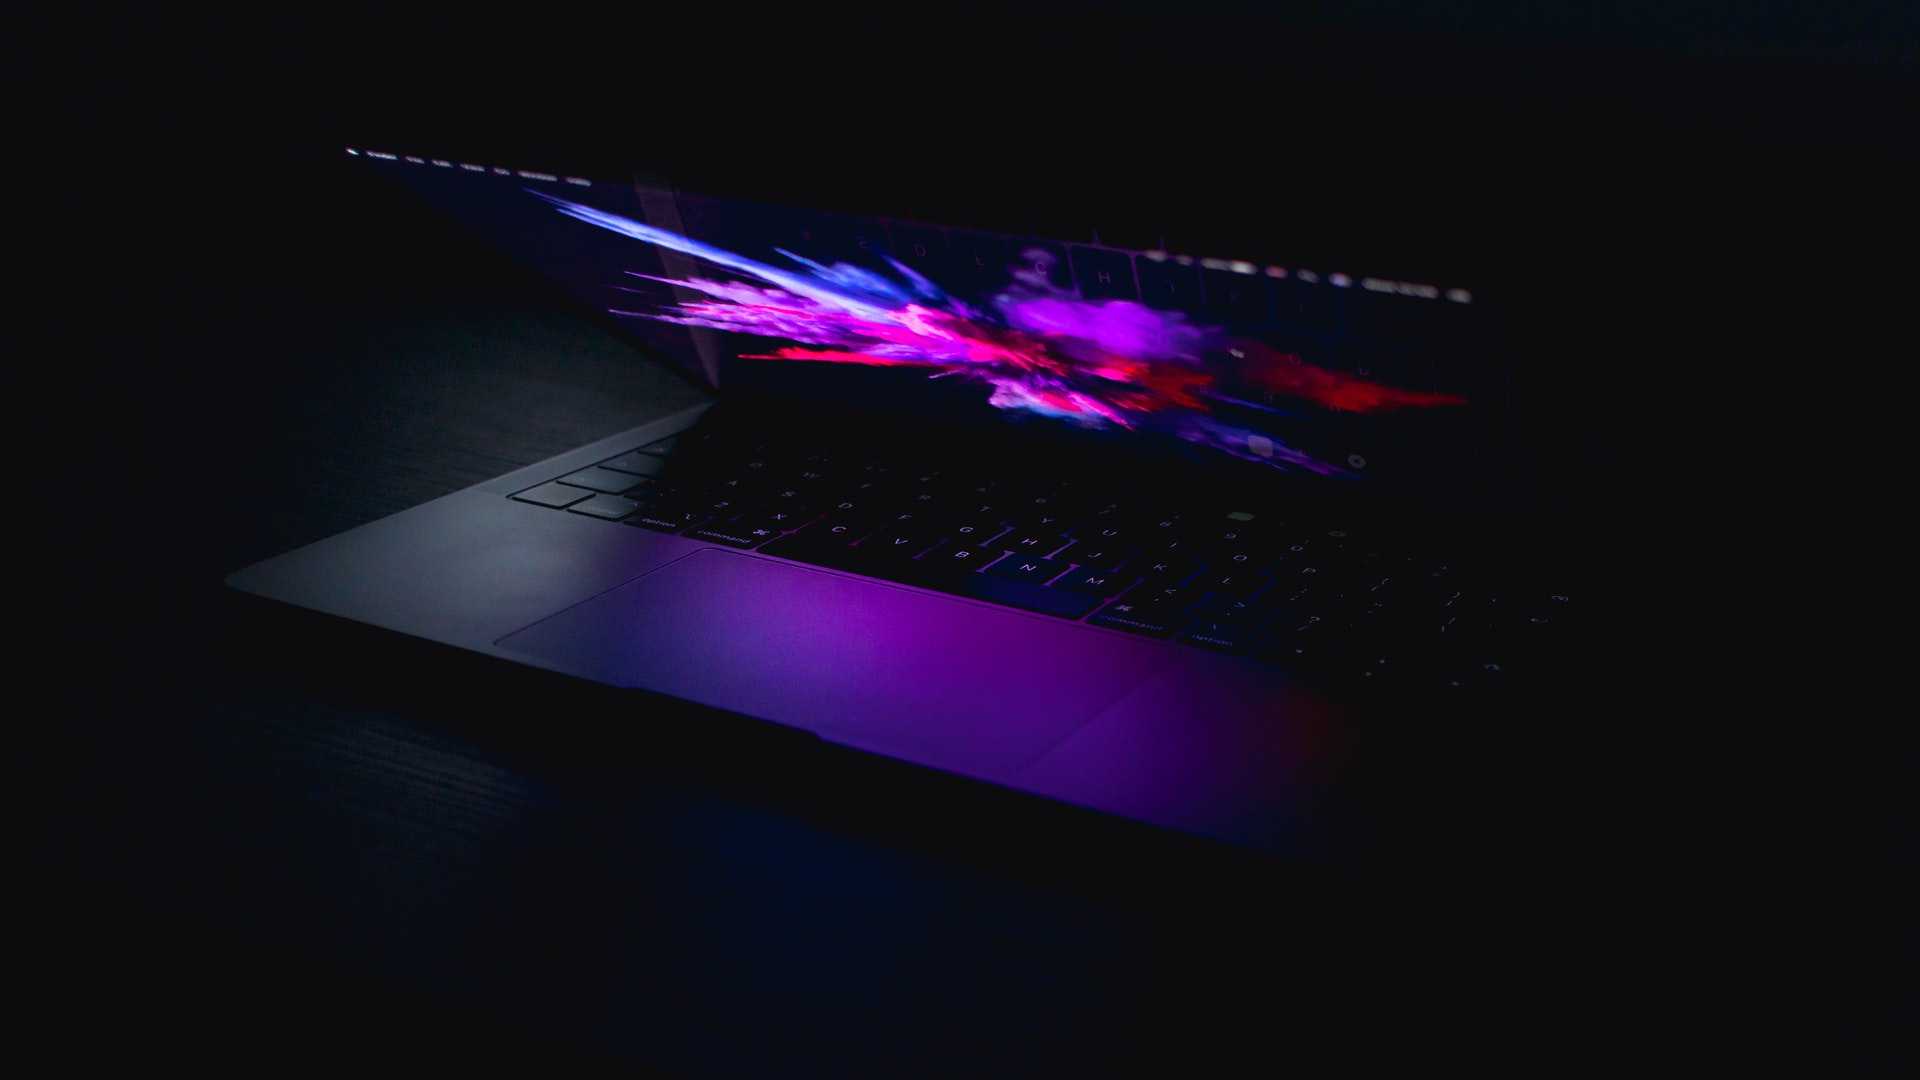 Macbook slightly open on a dark background